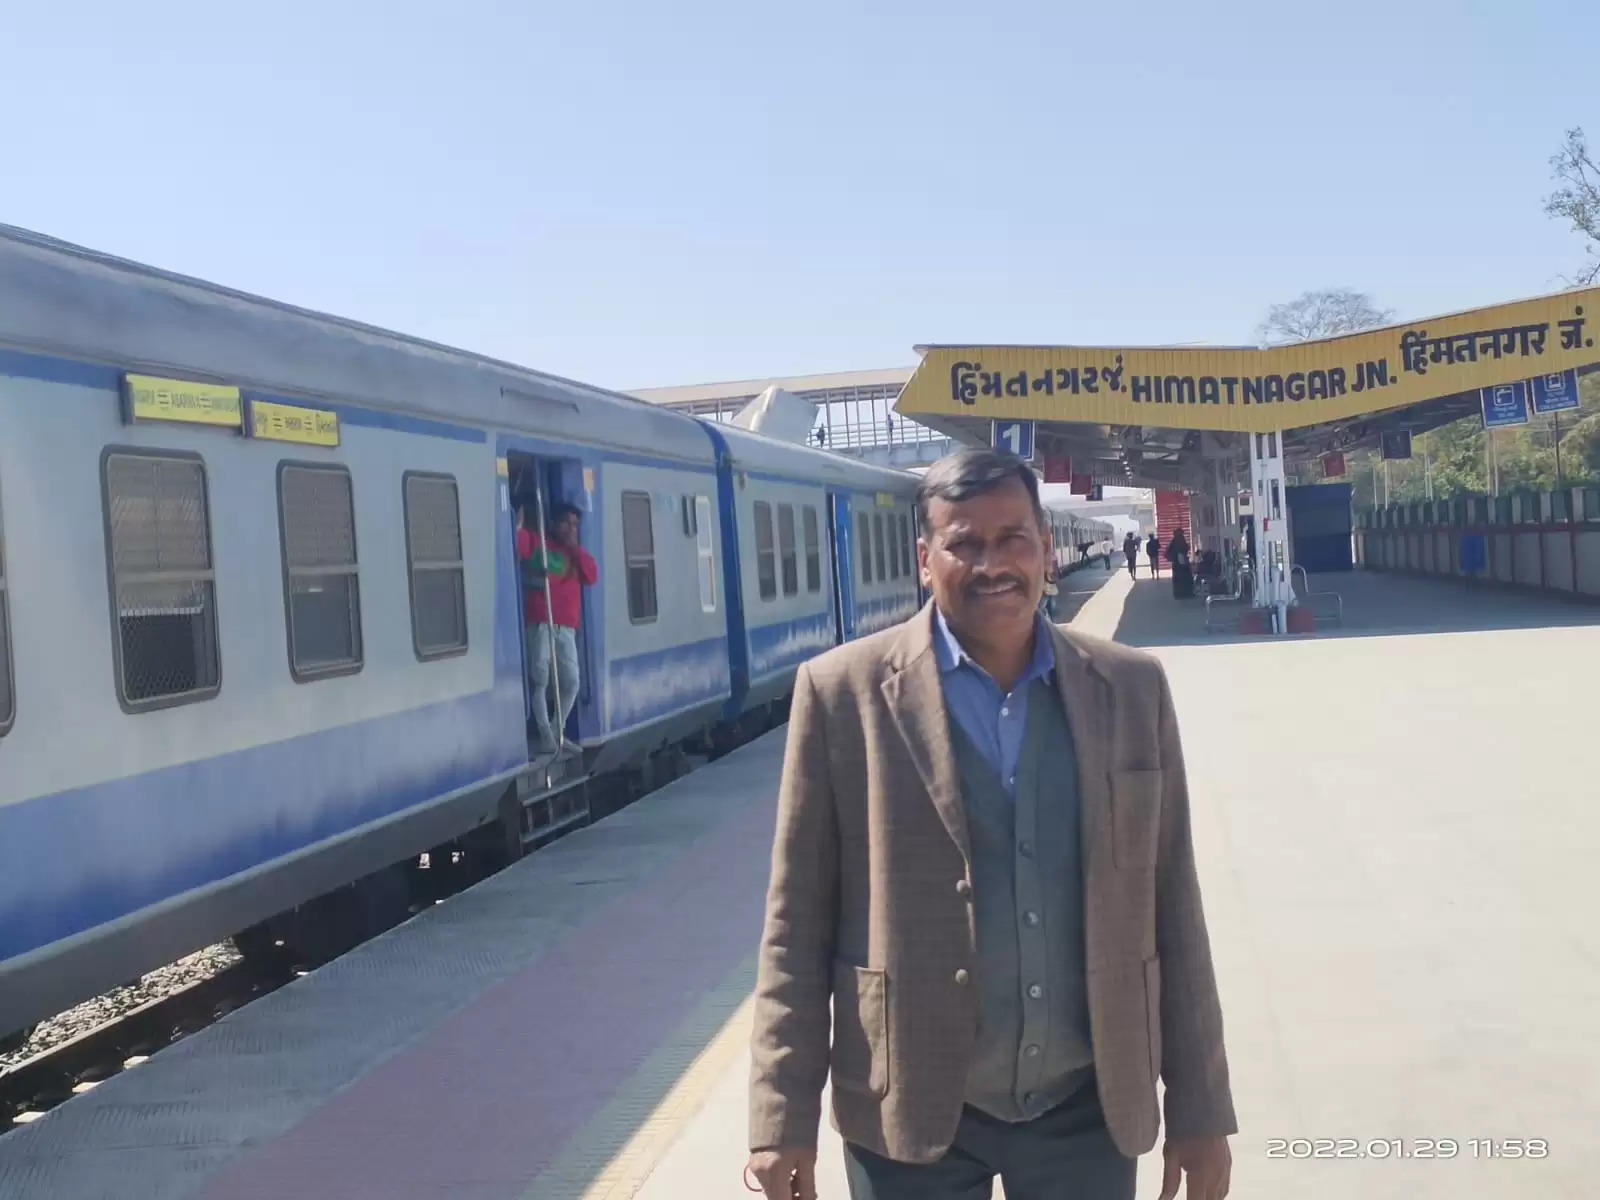 Demu Train Udaipur Himmatnagar Dungarpur Lusadiya